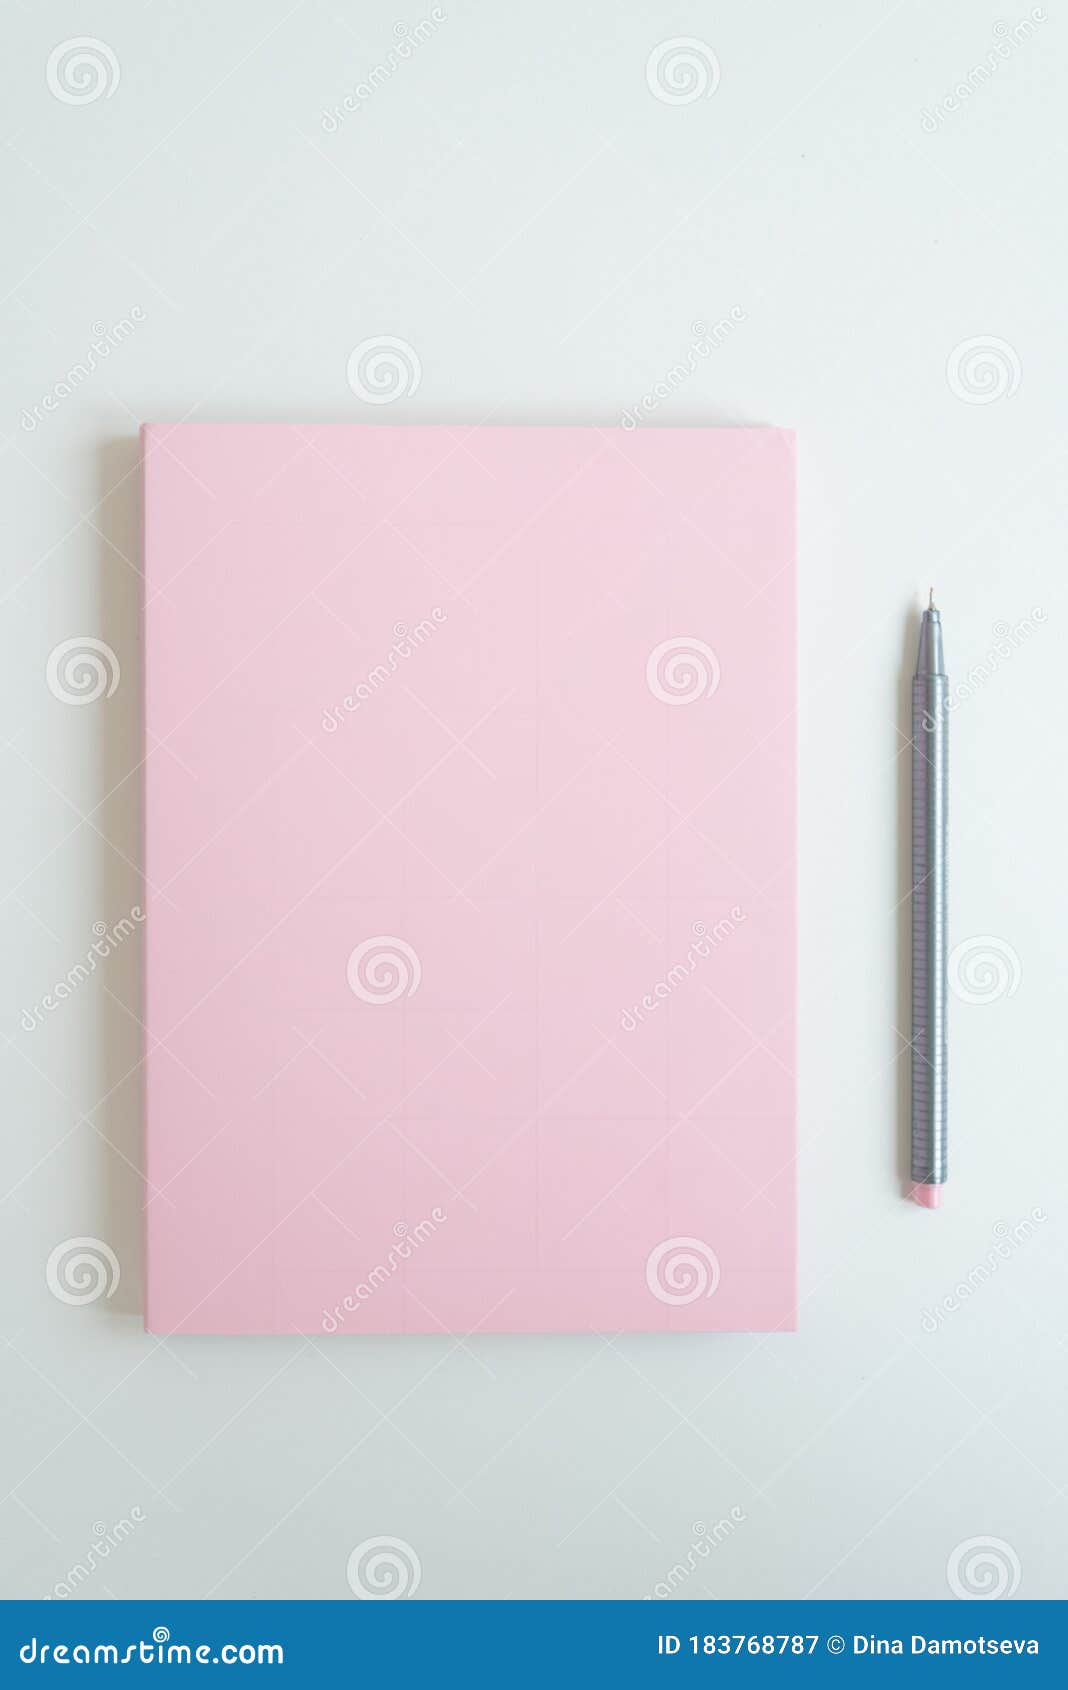 Sul Tavolo C'è Un Diario Segreto Di Una Ragazza. La Copertina Del Notebook  è Di Colore Rosa Delicato. Accanto a Essa C'è Una Penna Immagine Stock -  Immagine di segreto, colore: 183768787